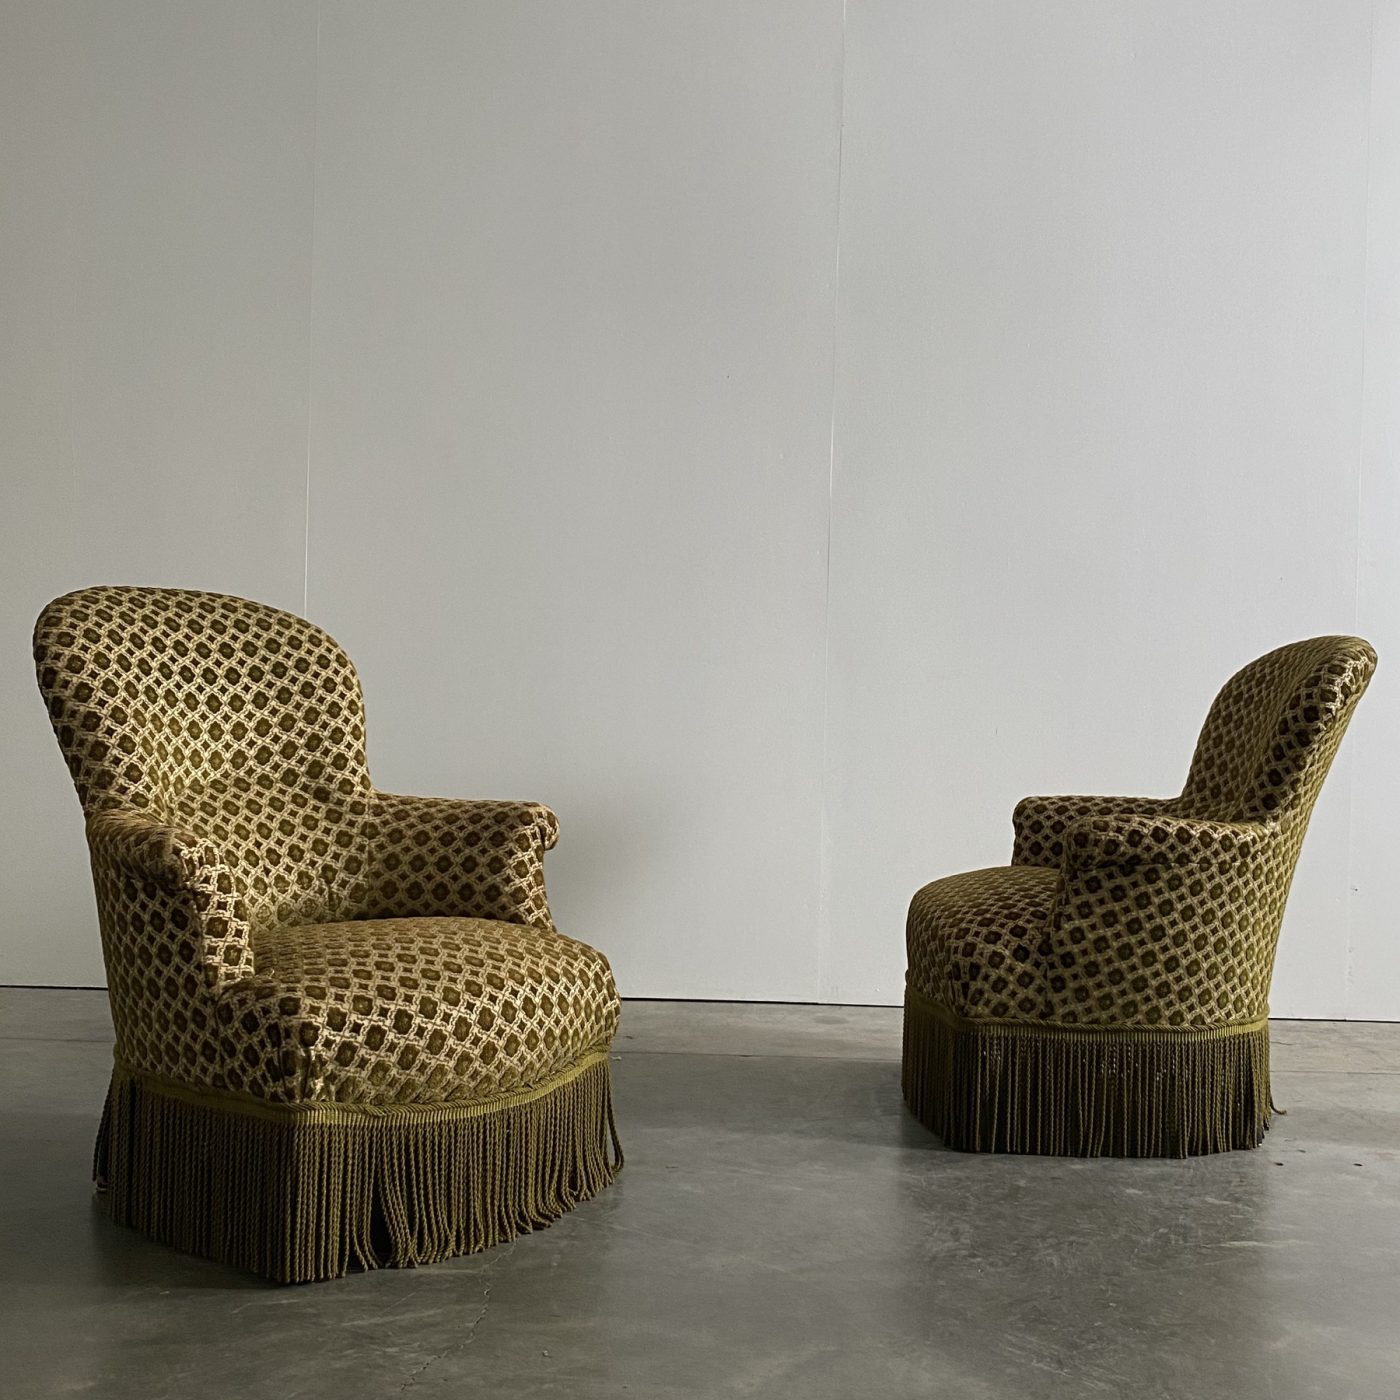 objet-vagabond-napoleon-armchairs0005